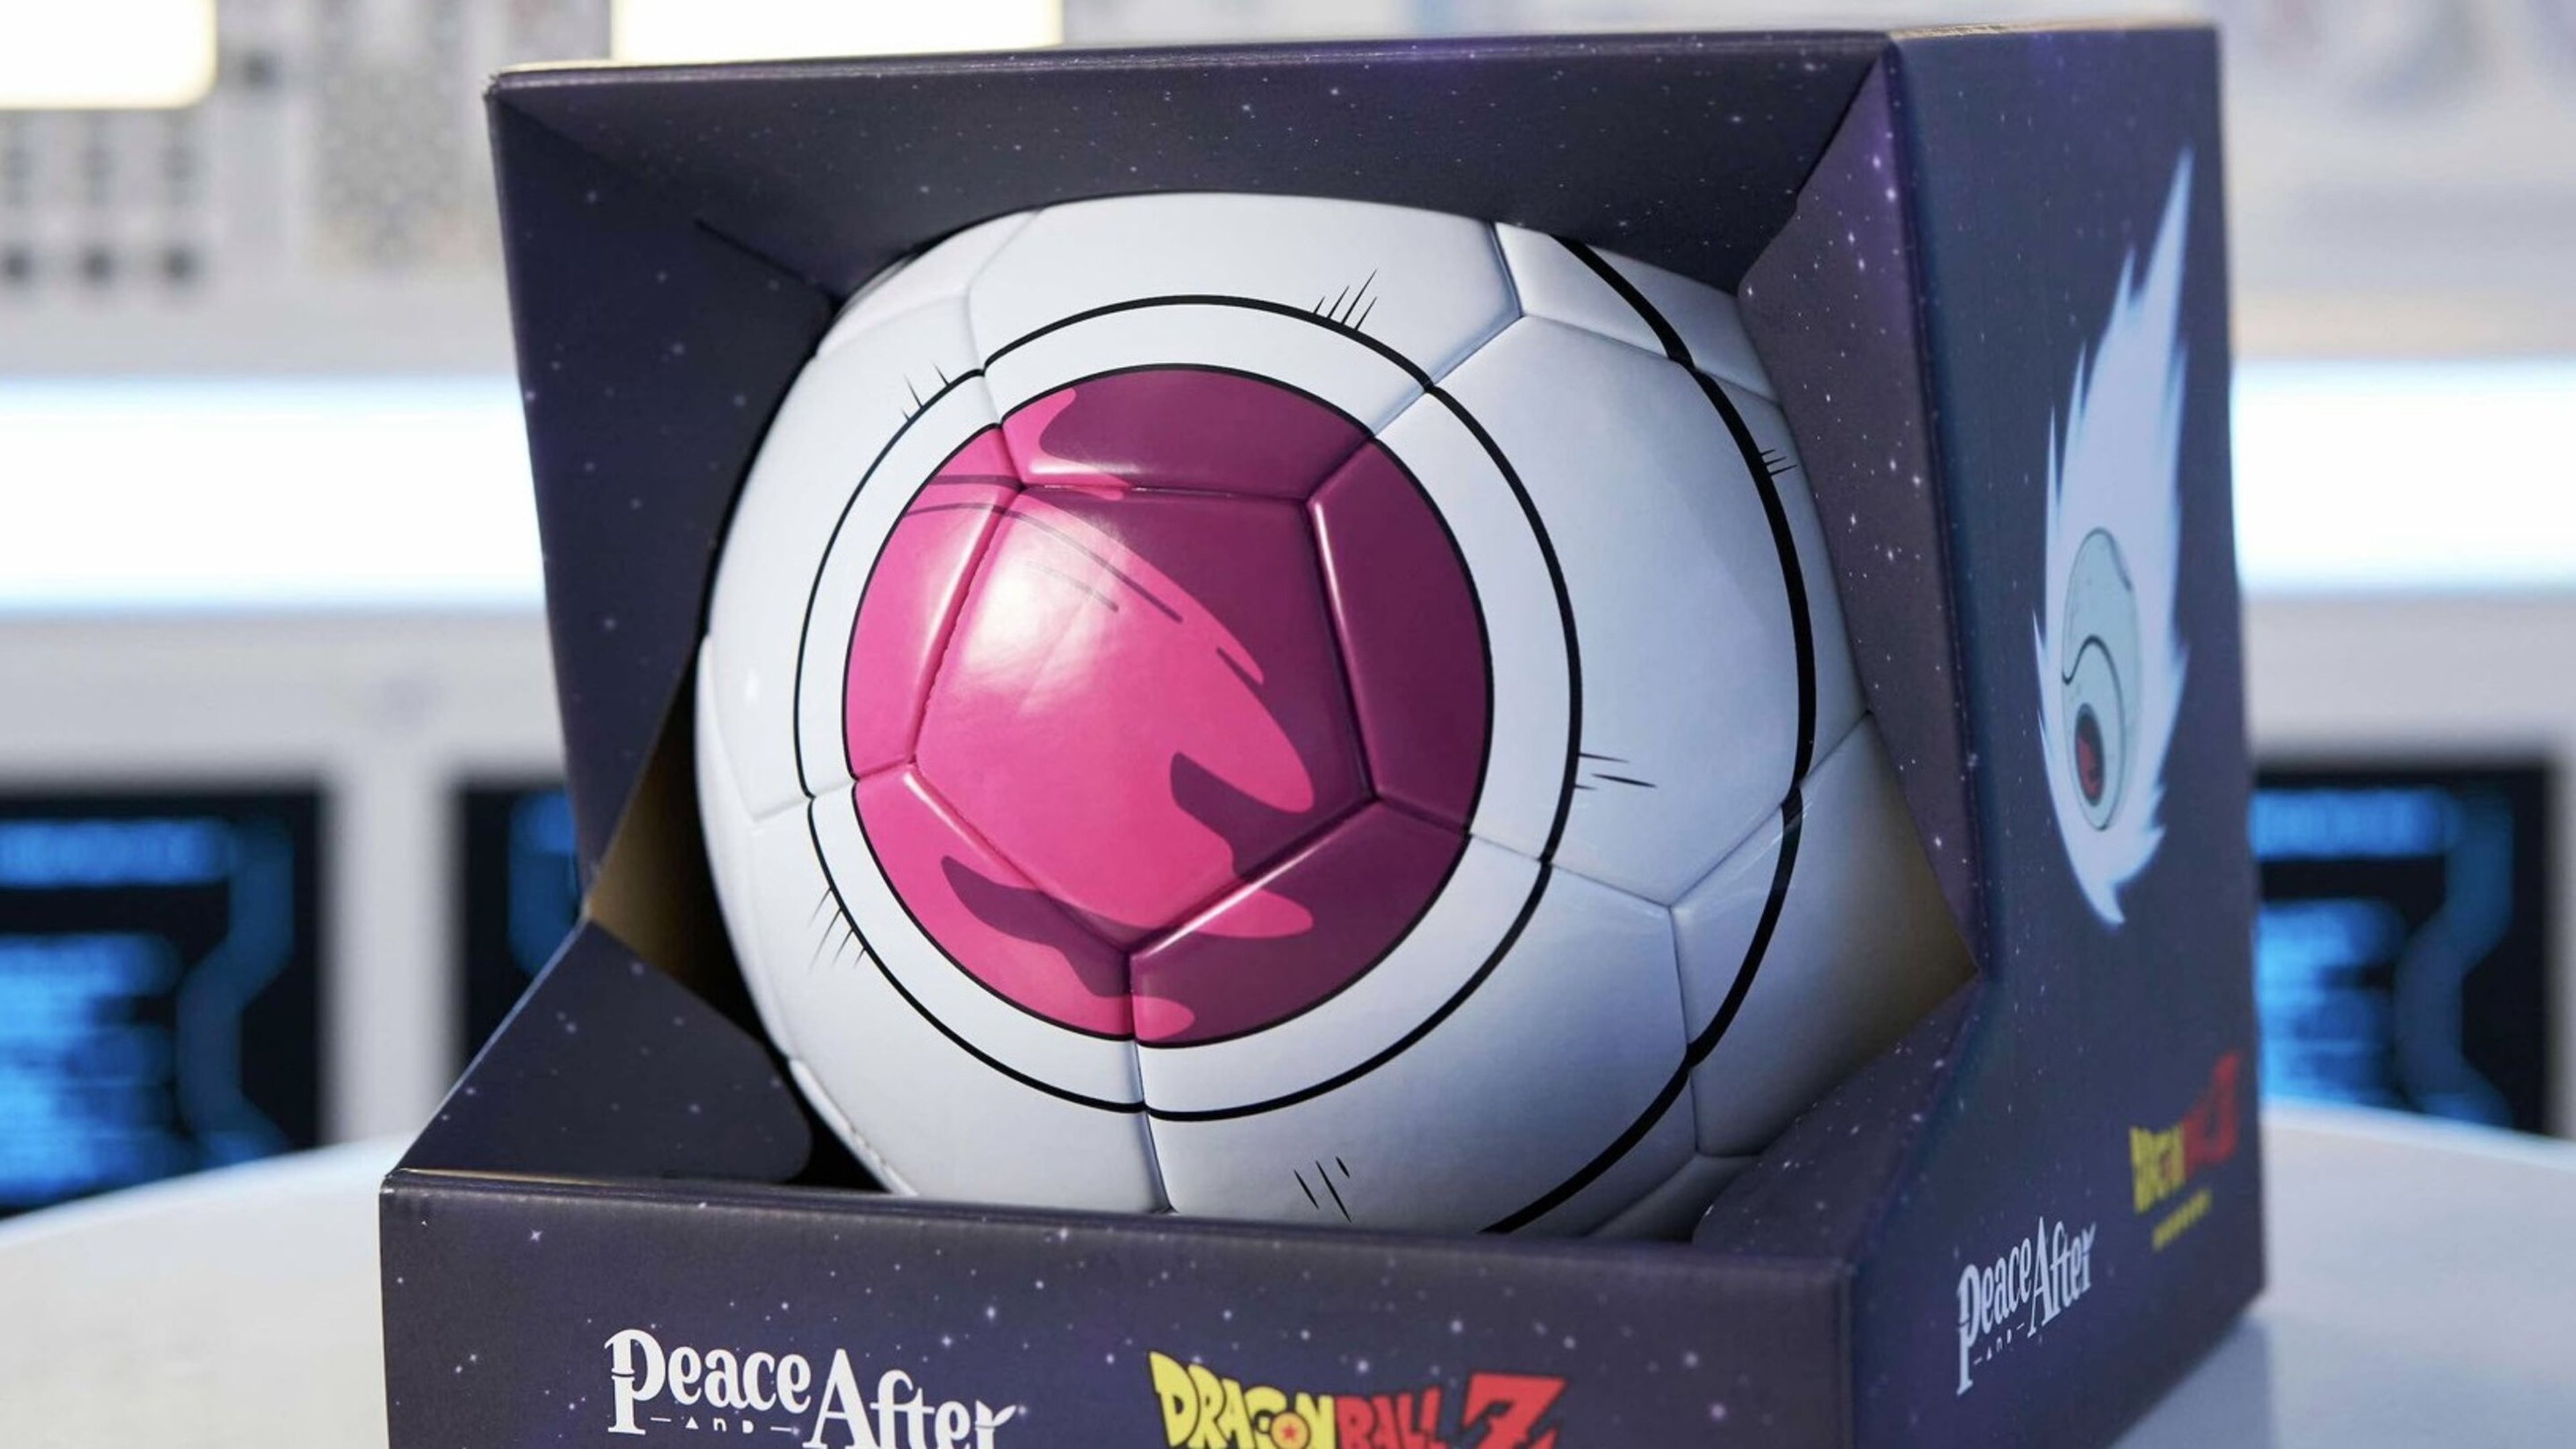 Peace and After presenta su nueva colección de ropa de Dragon Ball y un balón de fútbol convertido en una nave saiyan